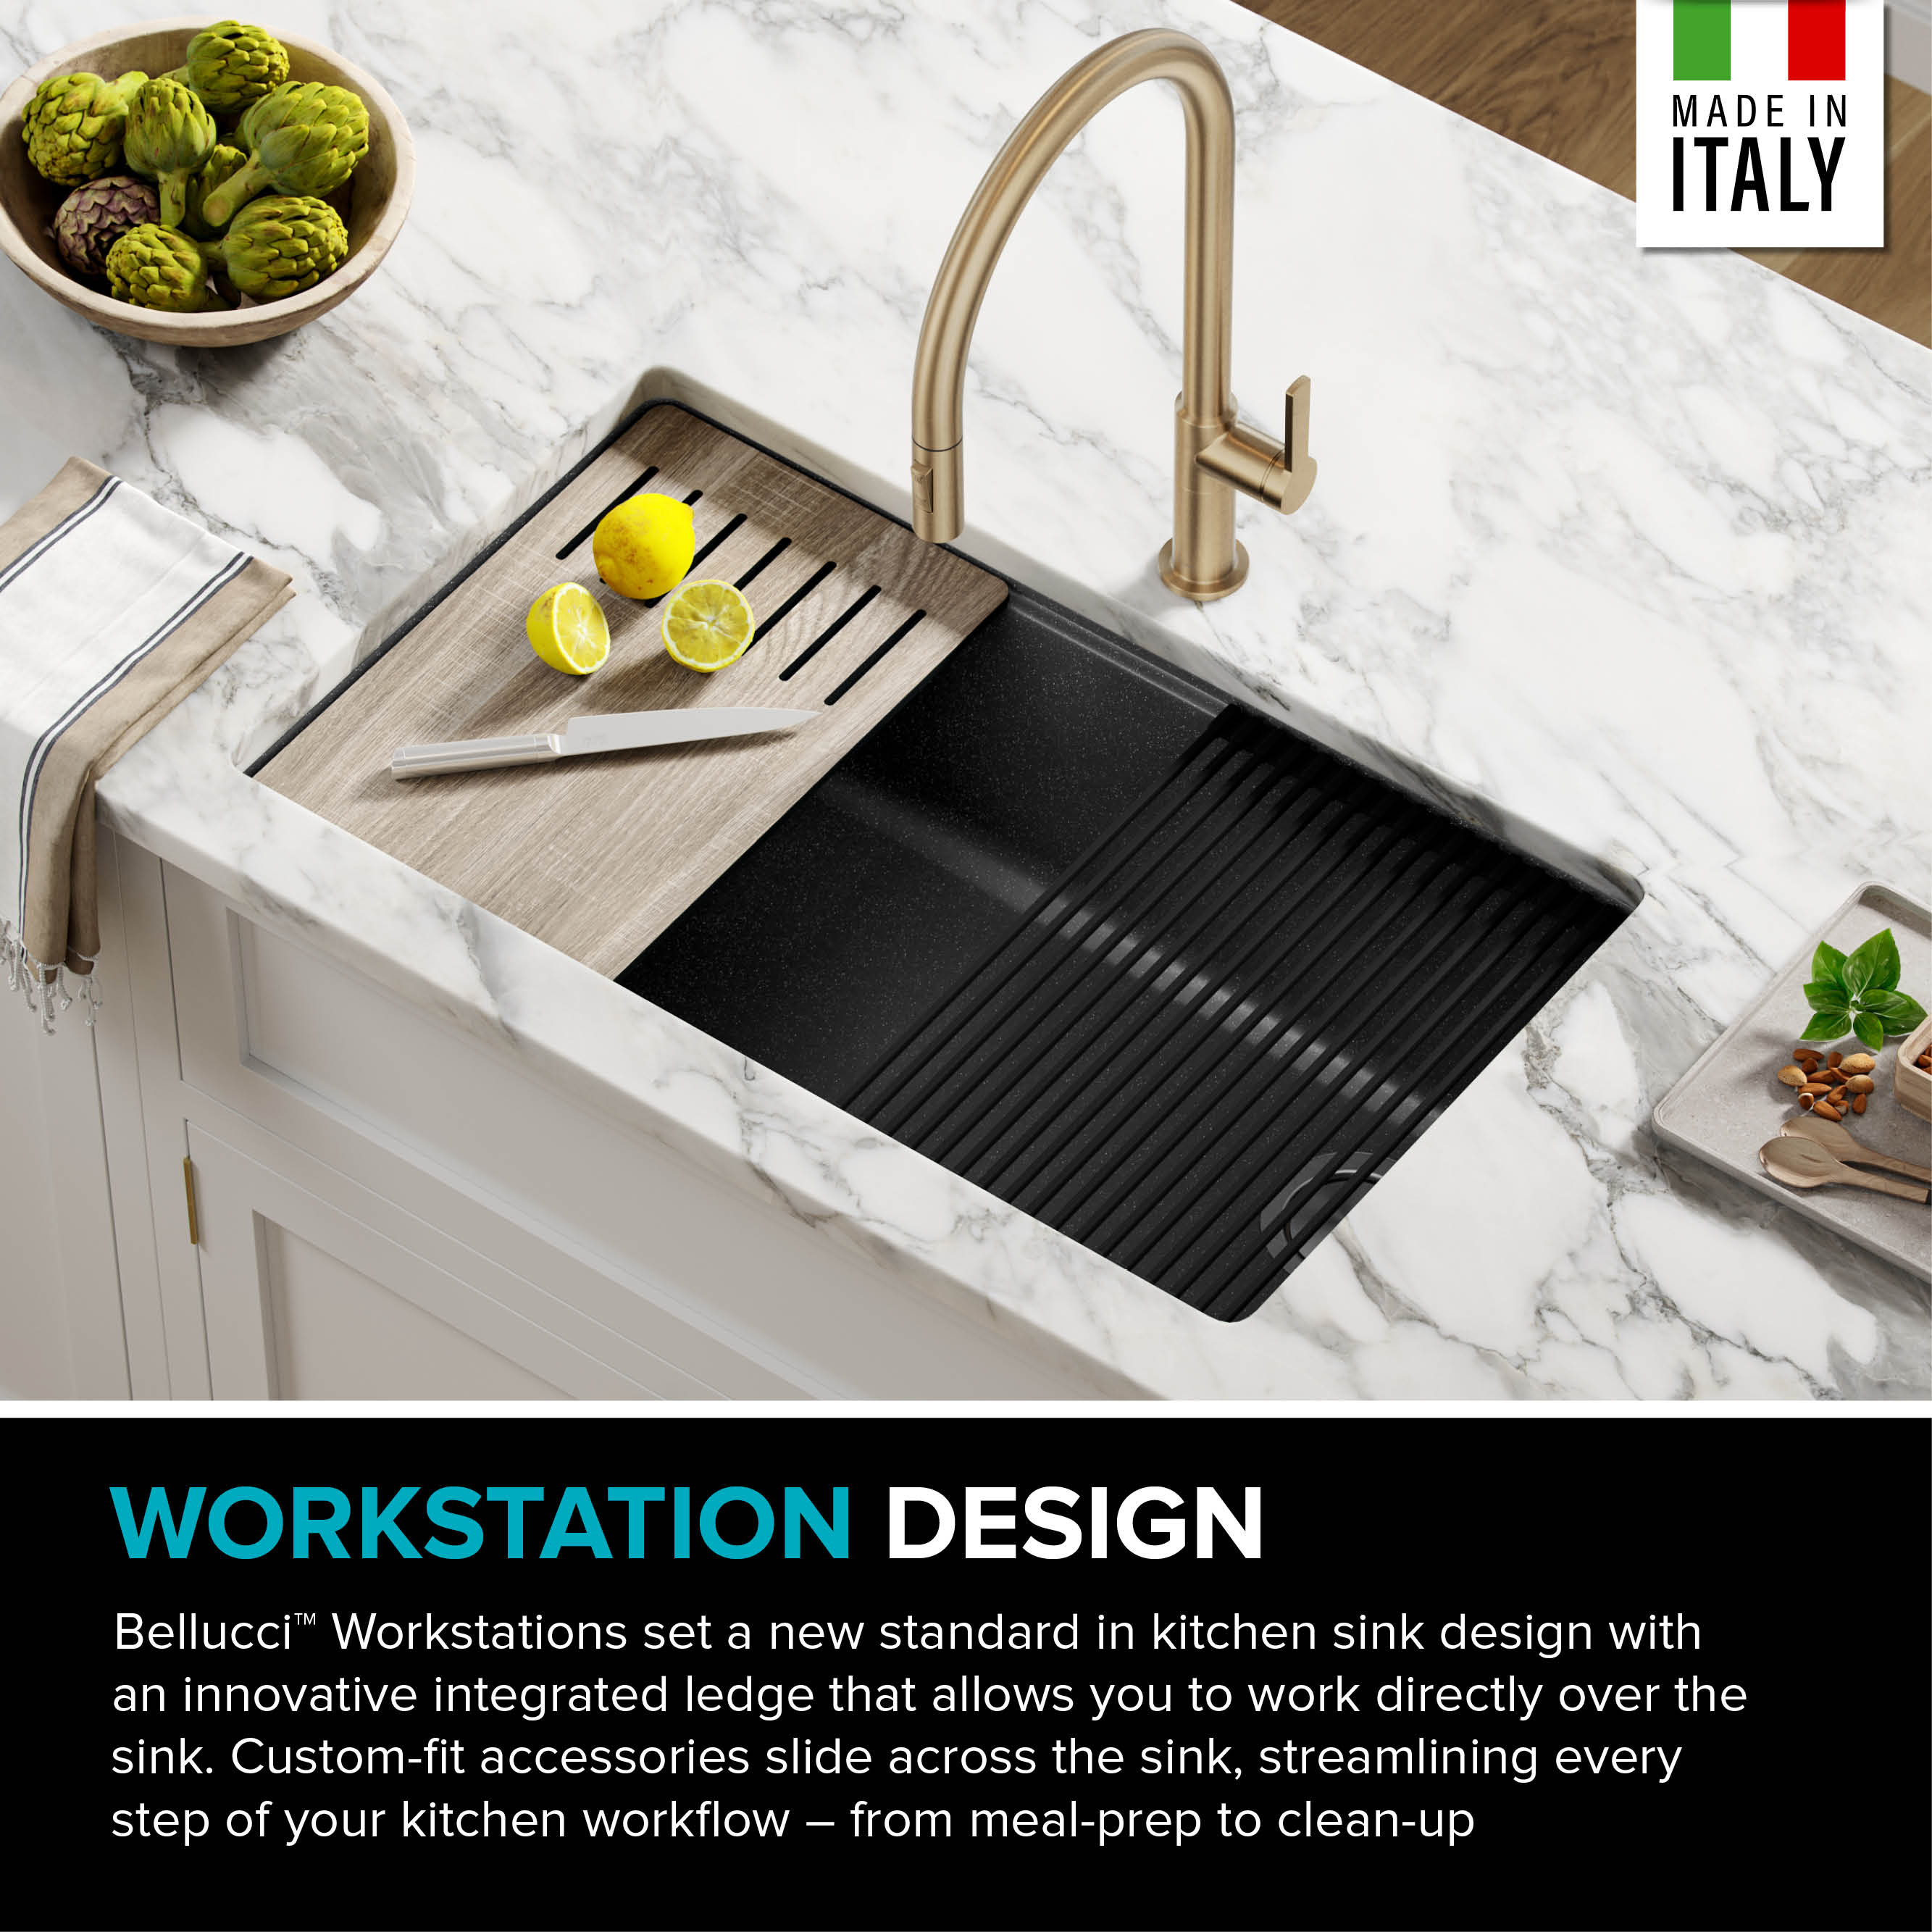 Kraus Workstation 32 in. Granite Composite Kitchen Sink